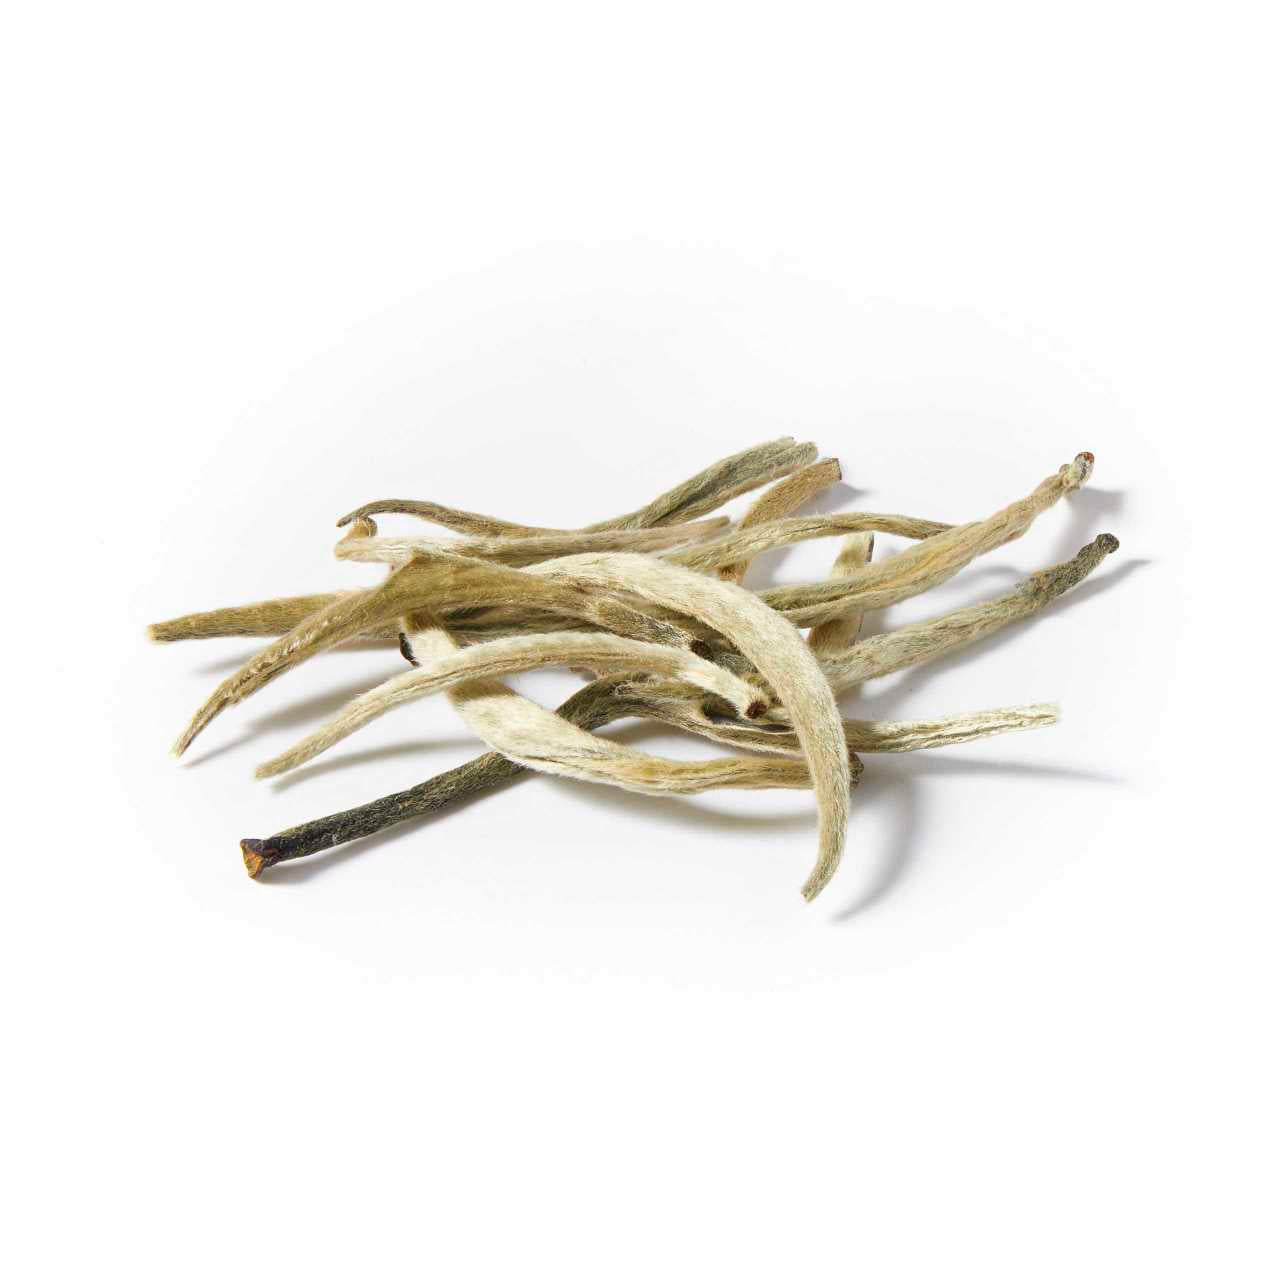 A macro pile of Rare Ceylon Silver Tips Loose Leaf Tea